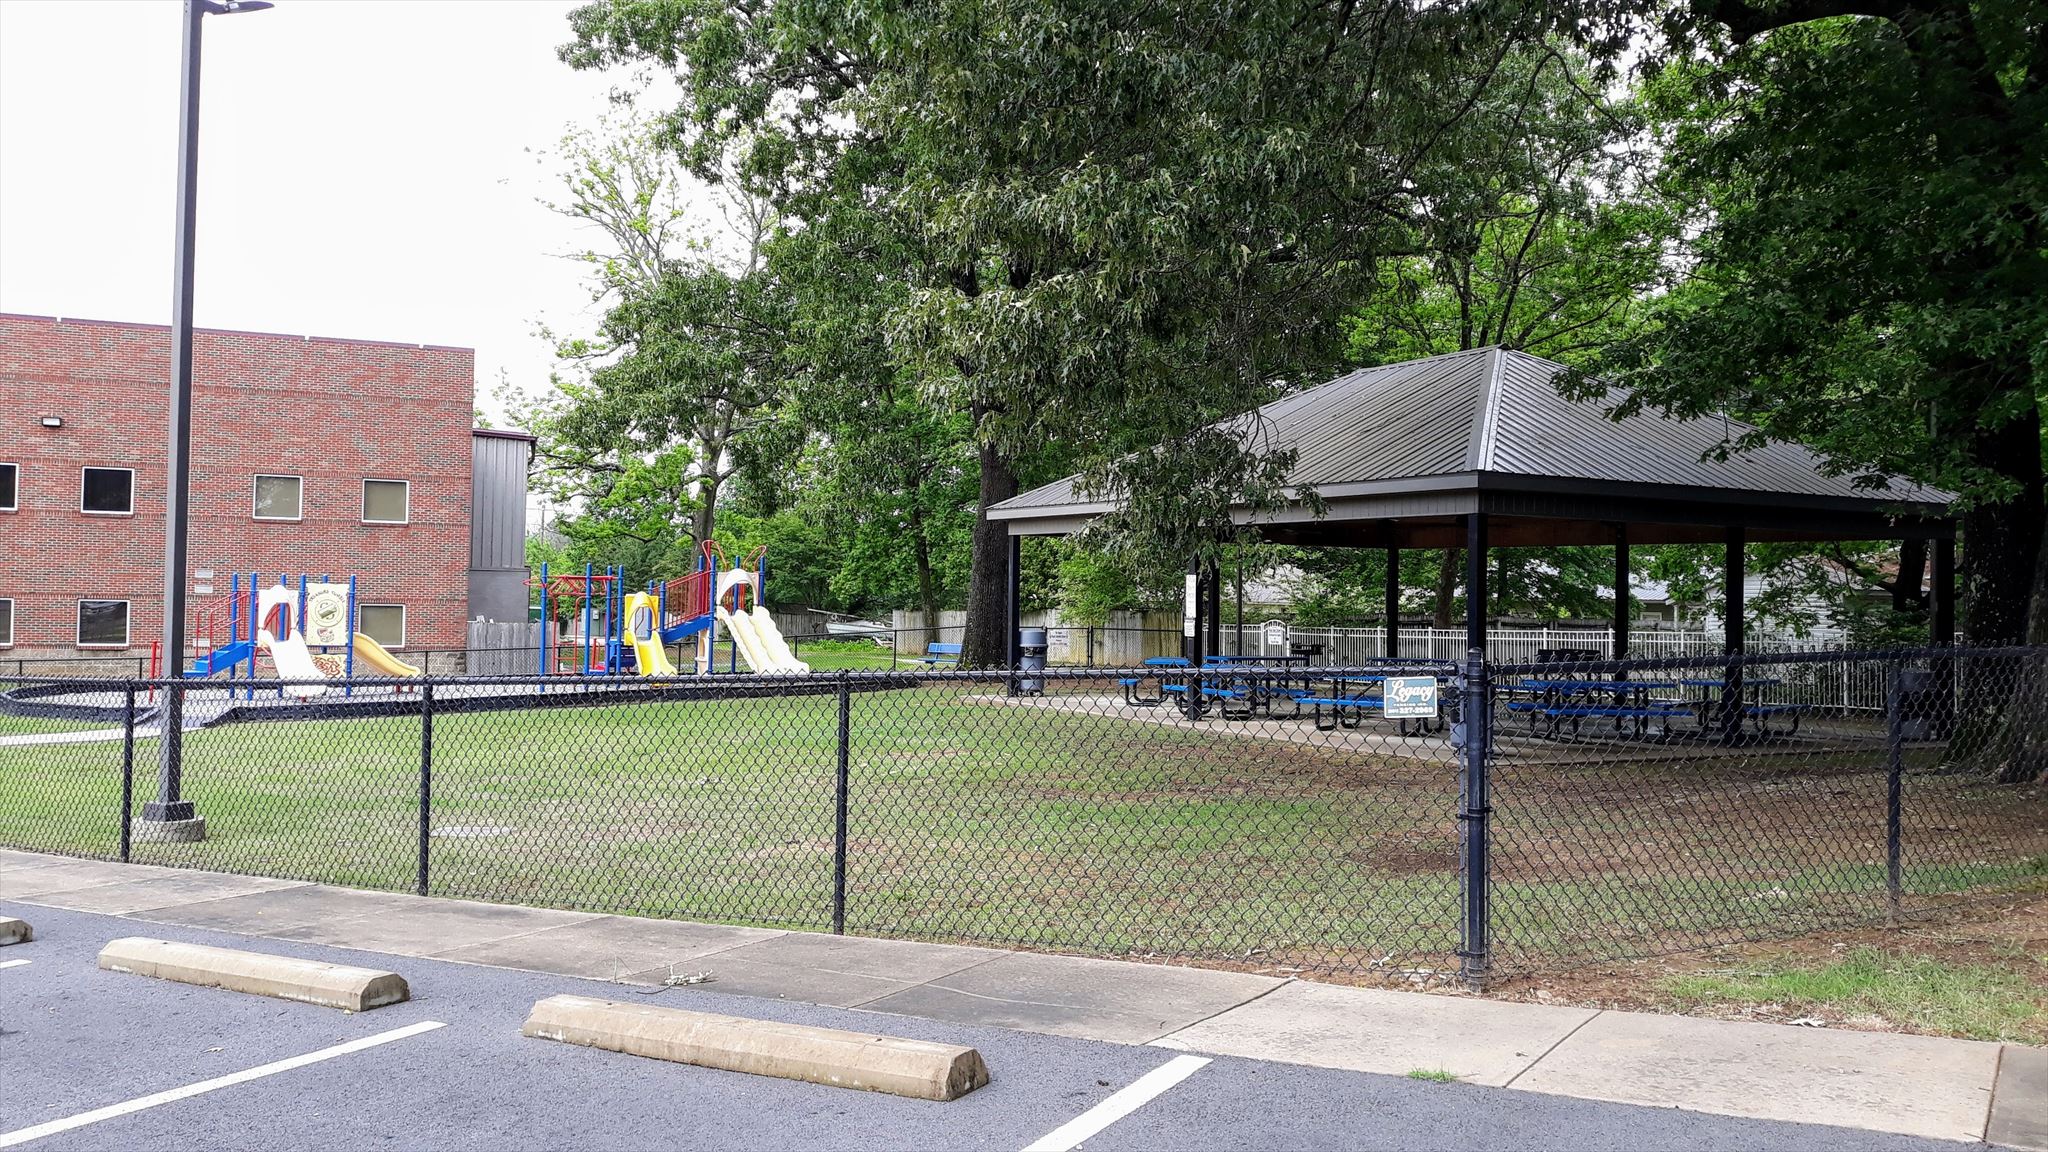 Pavilion and playground area